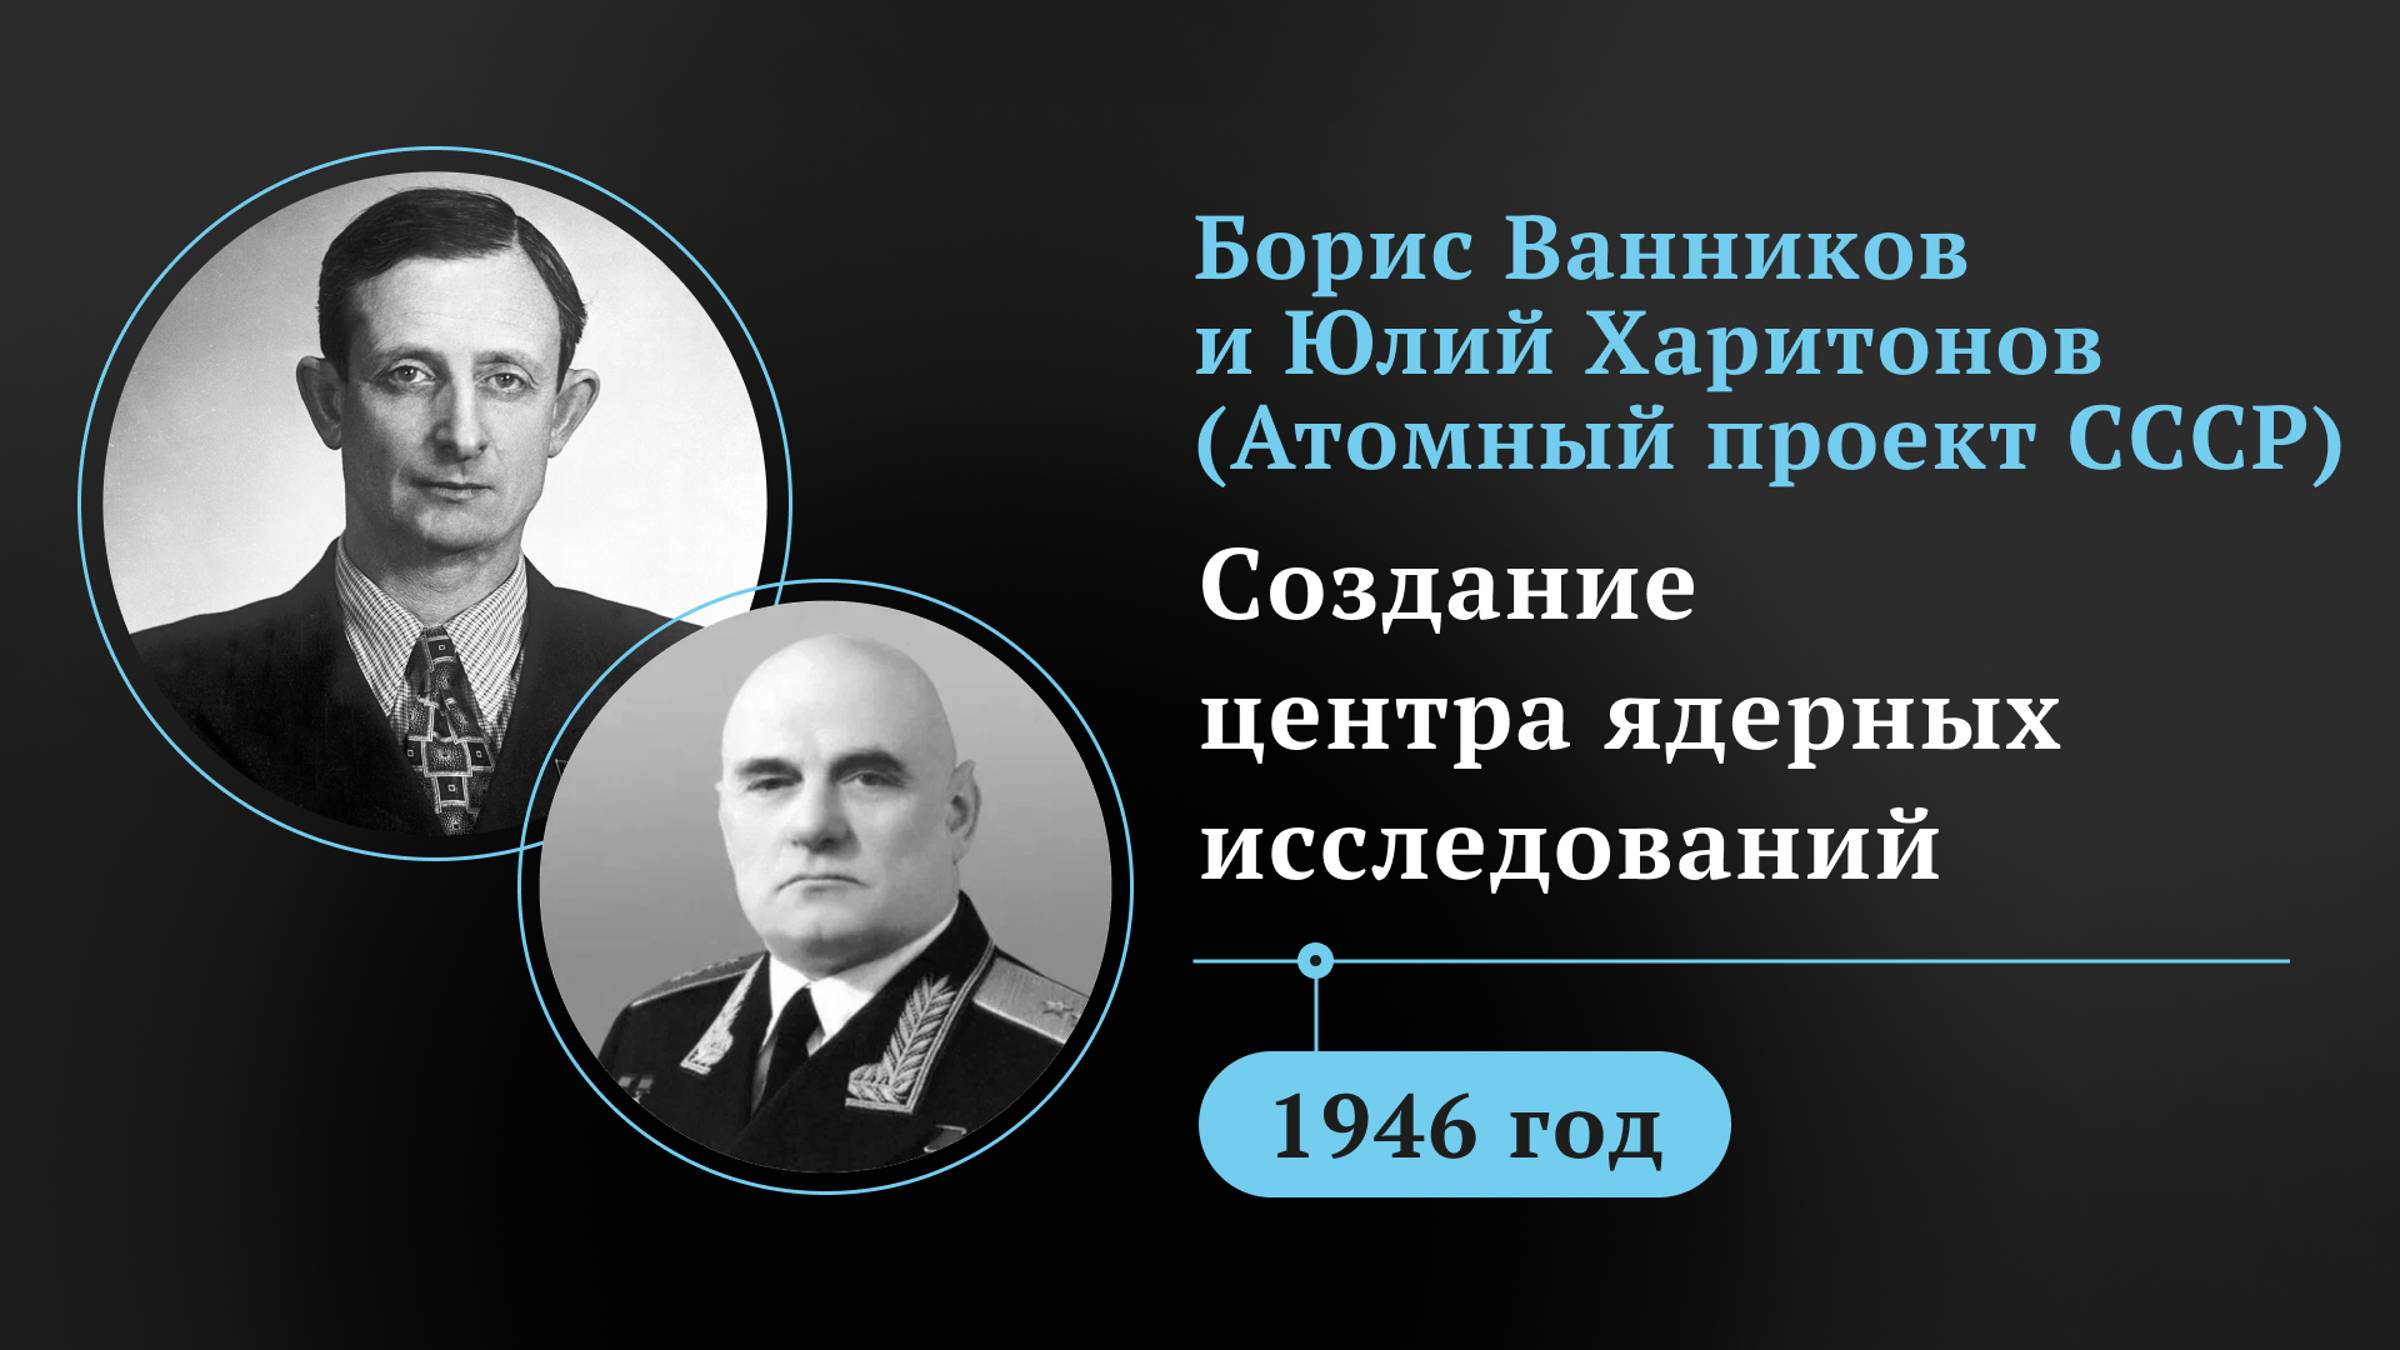 Борис Ванников и Юлий Харитонов (Атомный проект СССР). Создание центра ядерных исследований